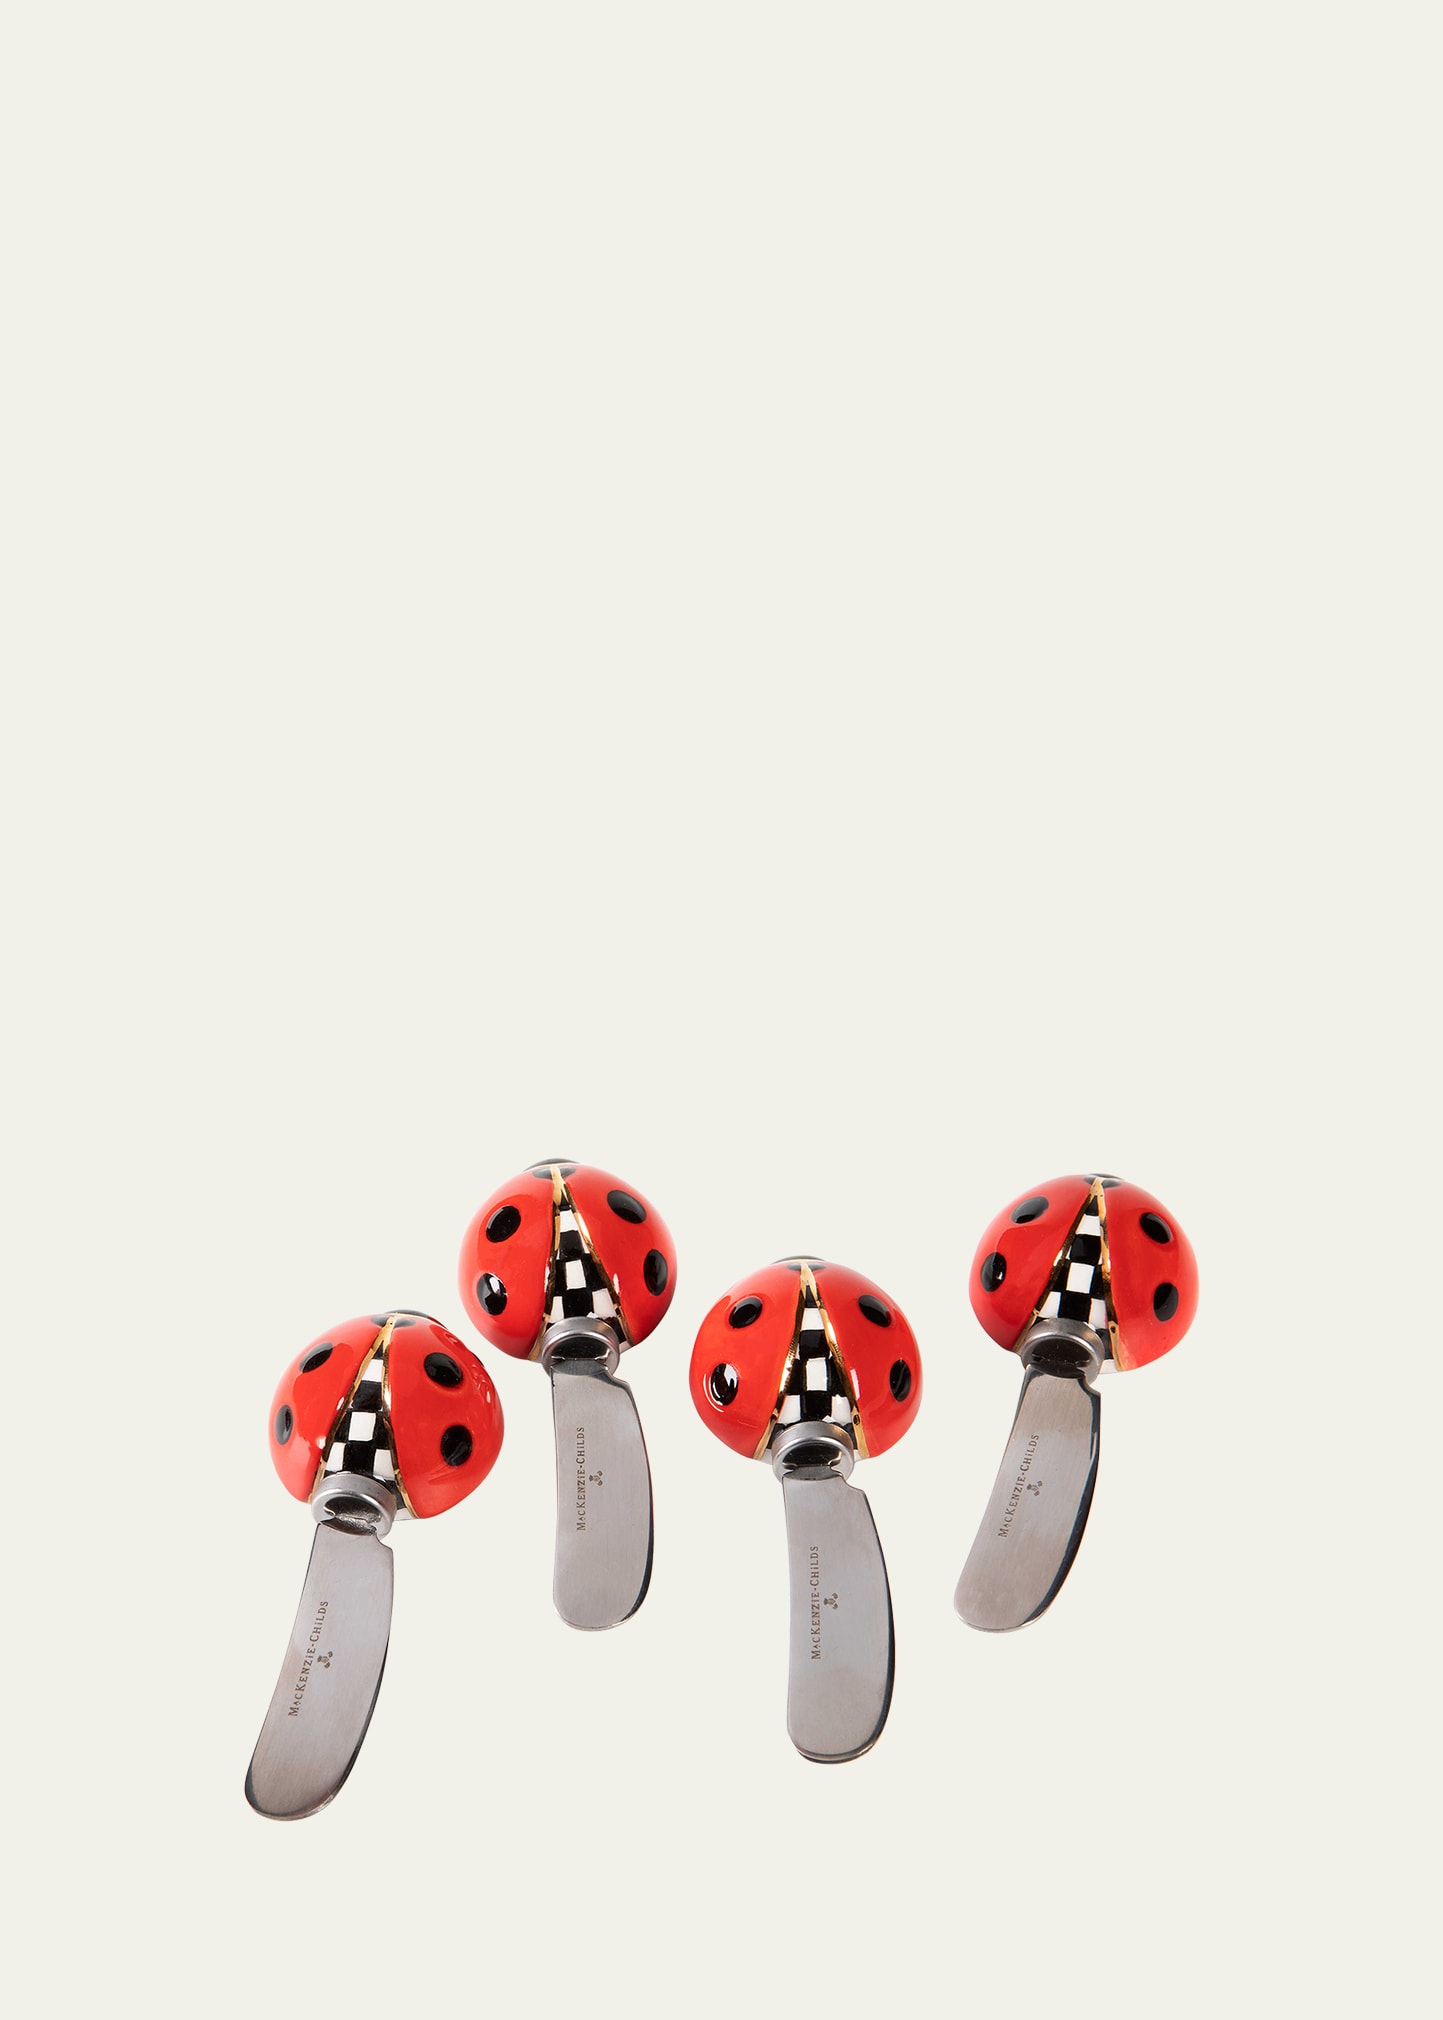 MacKenzie-Childs Ladybug Canape Knives, Set Of 4